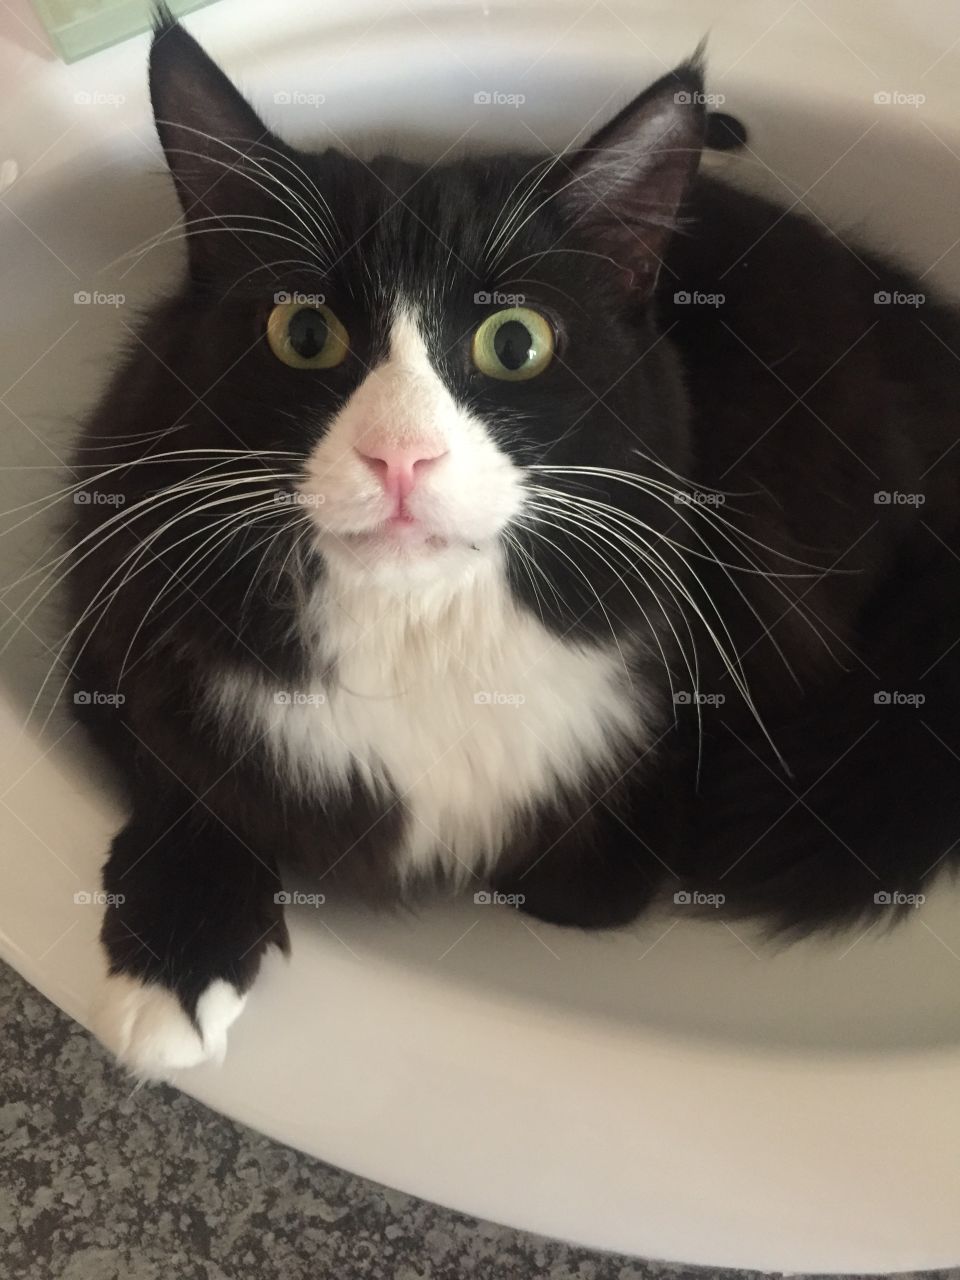 Big eye Tuxedo cat in basin